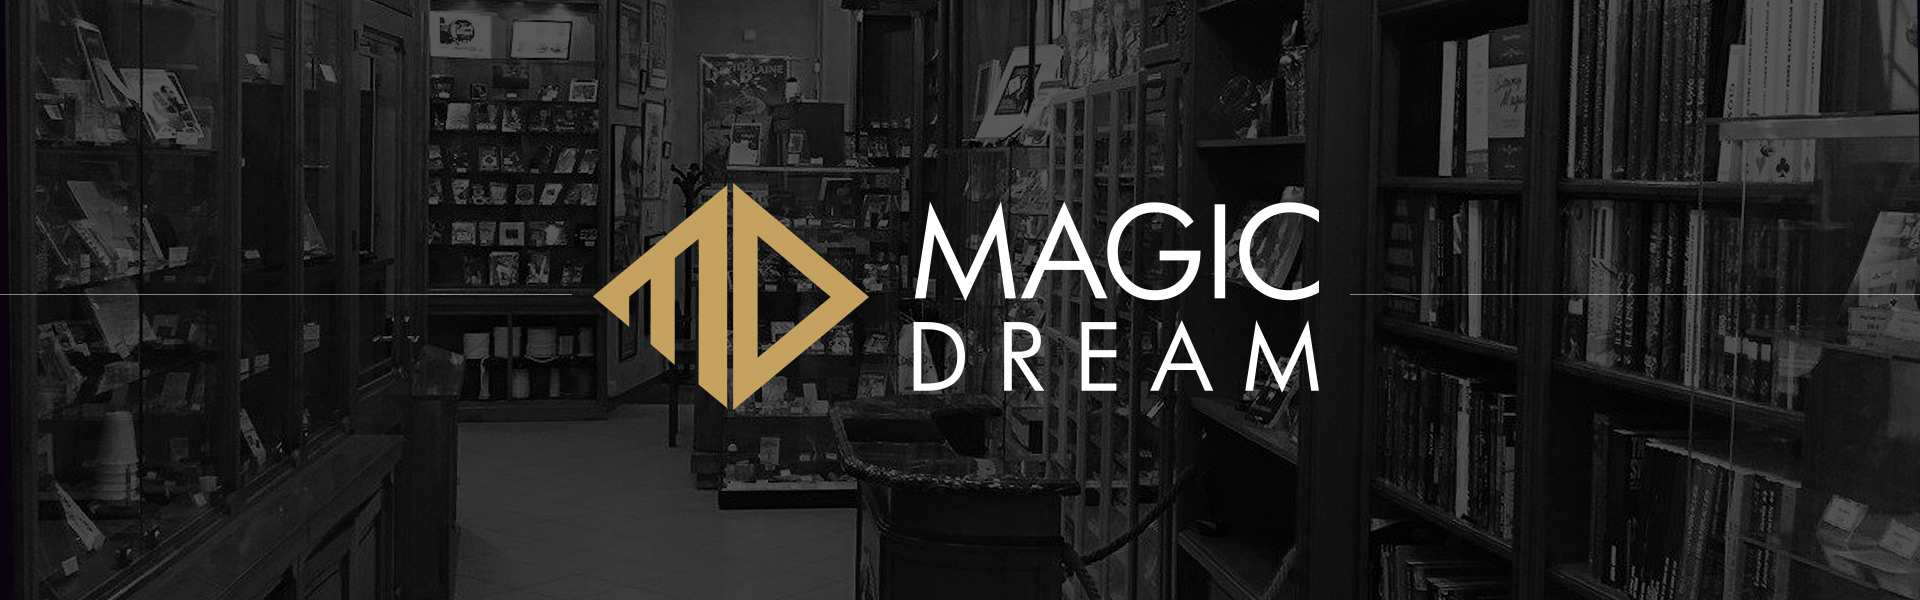 Magic shop in Paris: Magic Dream